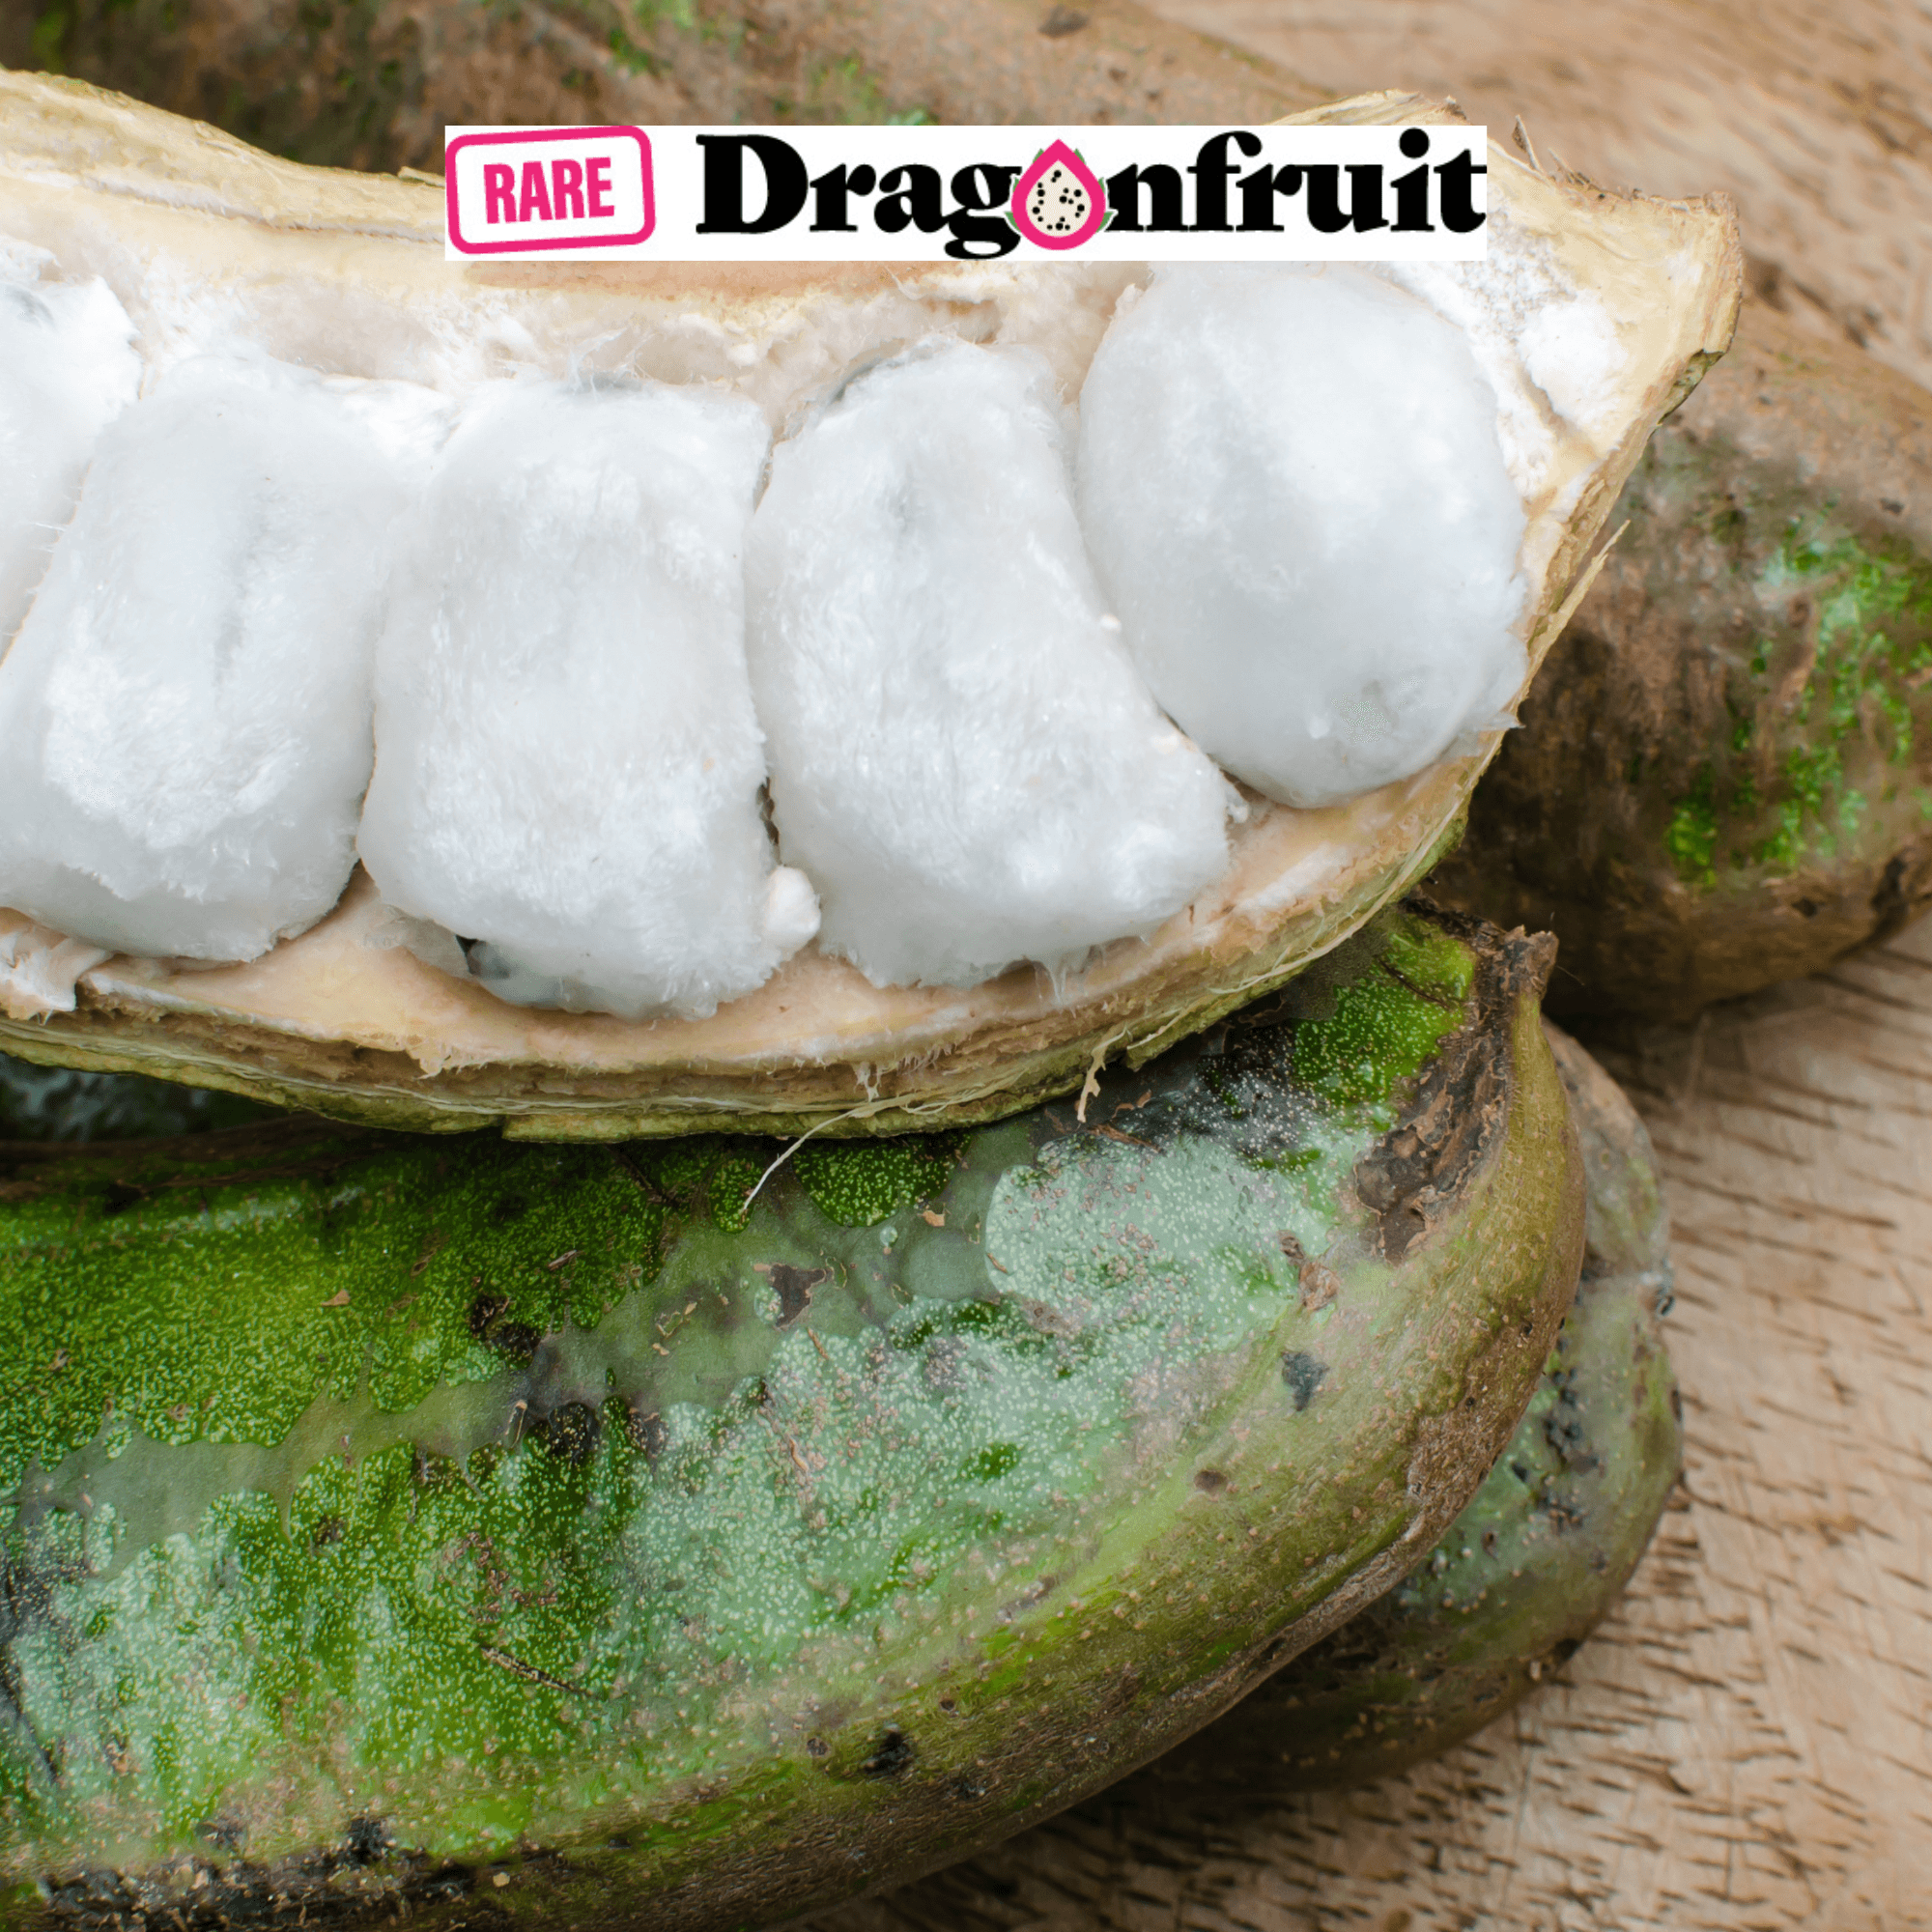 INGA aka- Ice Cream Bean - Rare Dragon Fruit